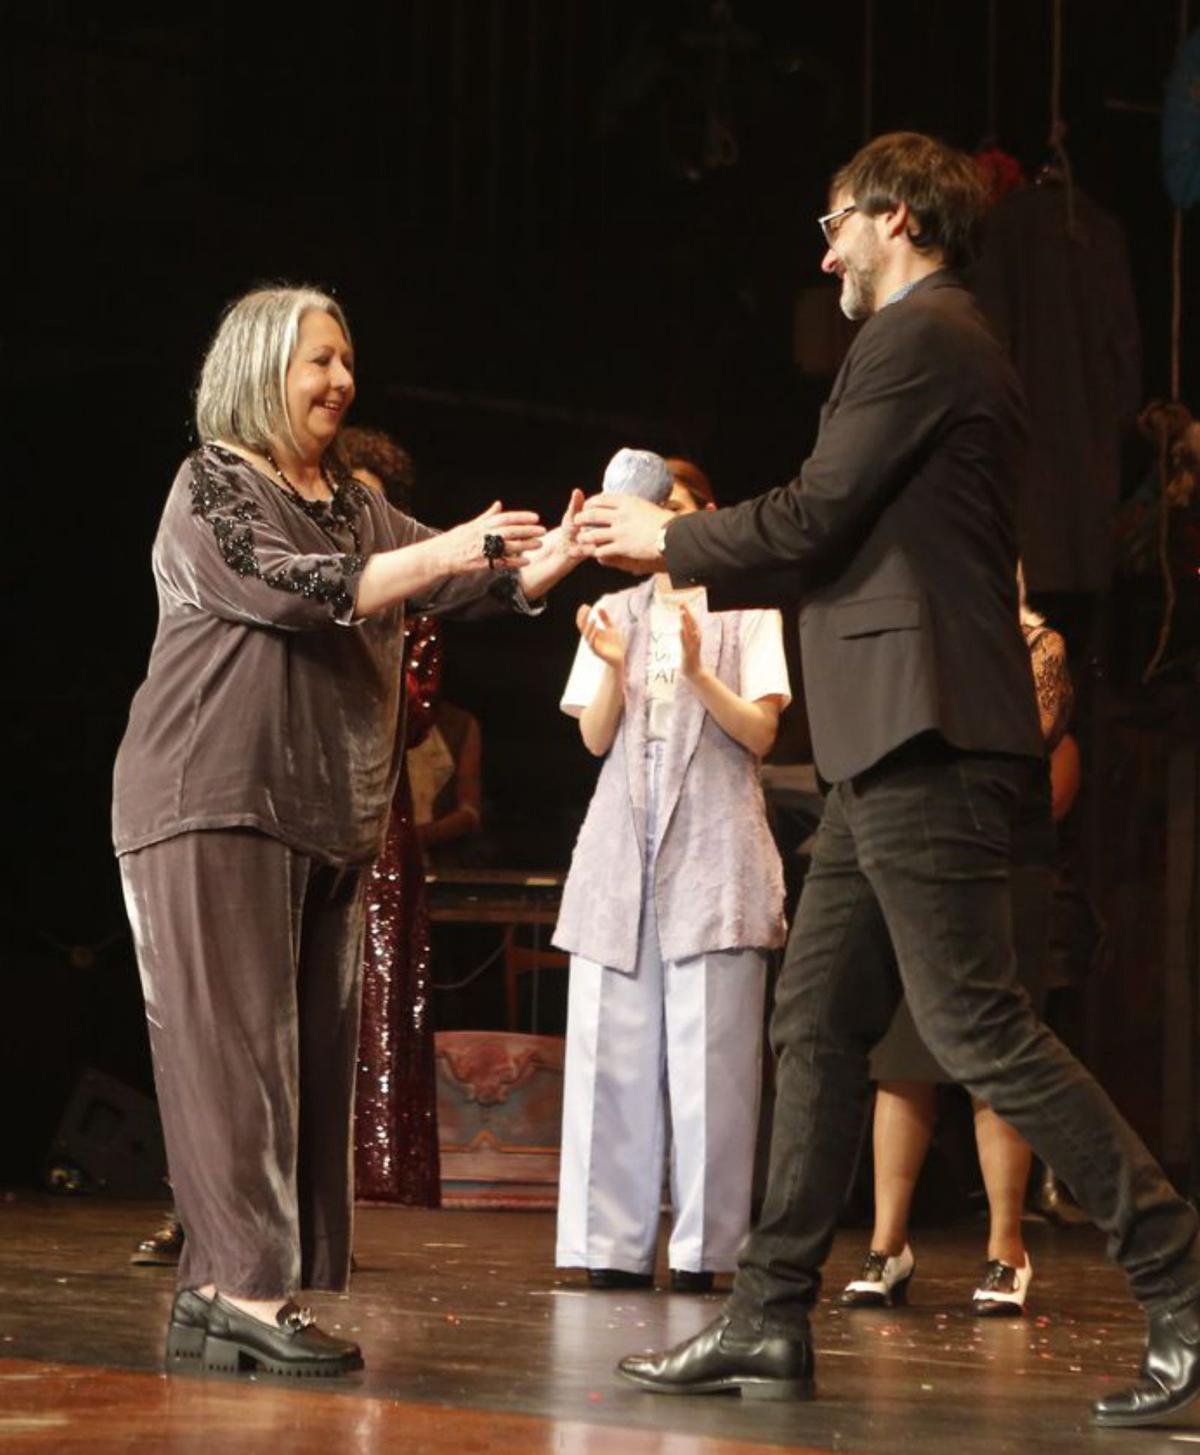 Cloti Vaello recibe o premio de honra das mans de Xosé Barato, na gala en A Coruña.   | // IAGO LÓPEZ